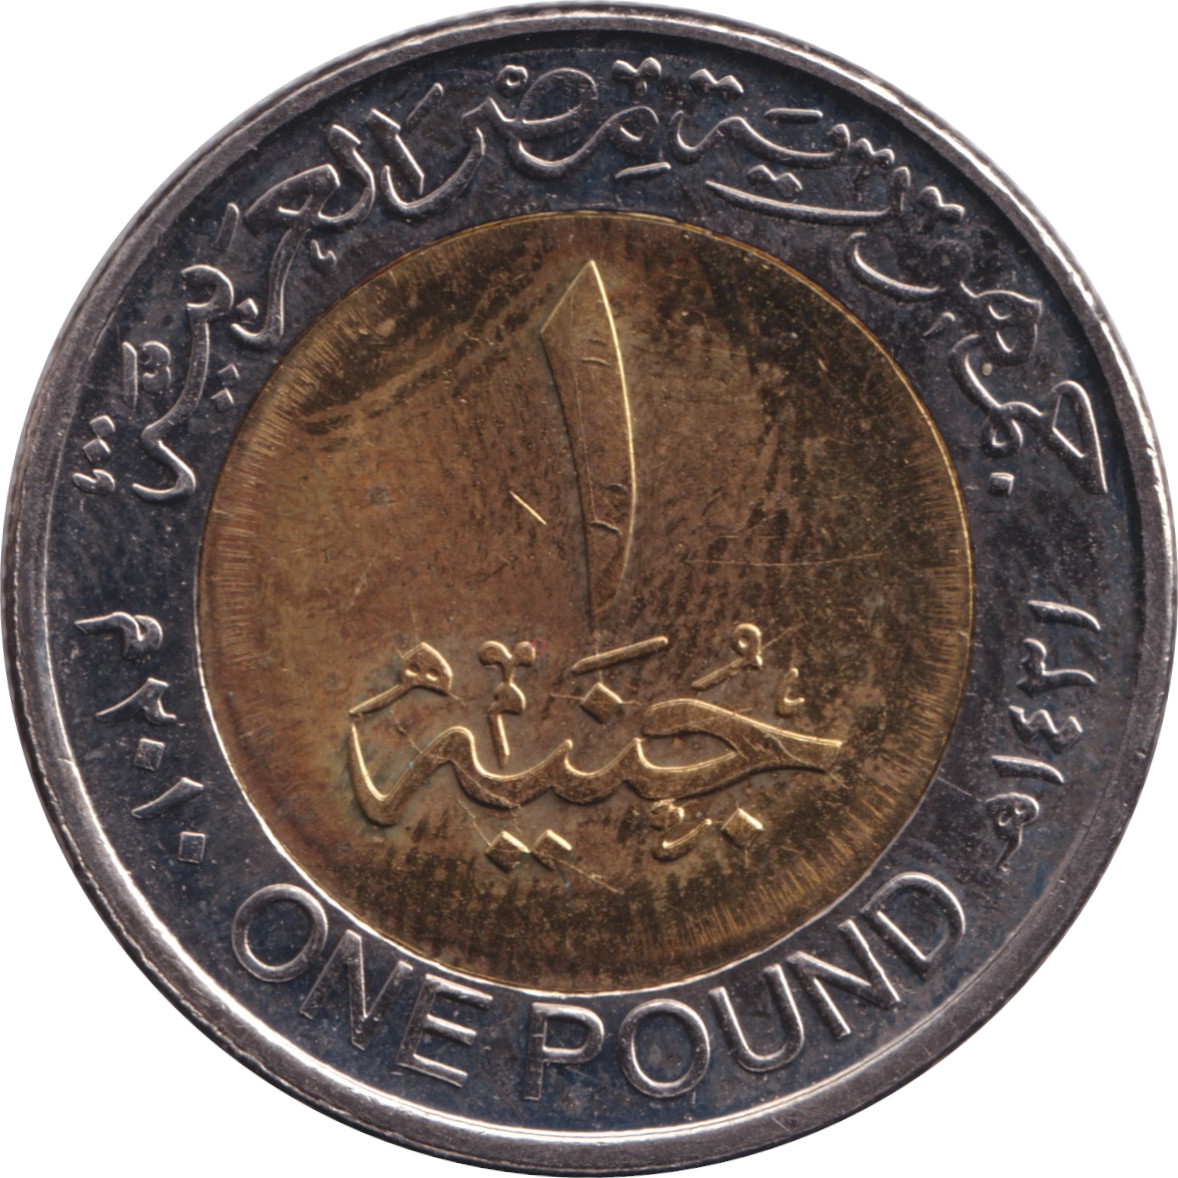 1 pound - Toutankhamon